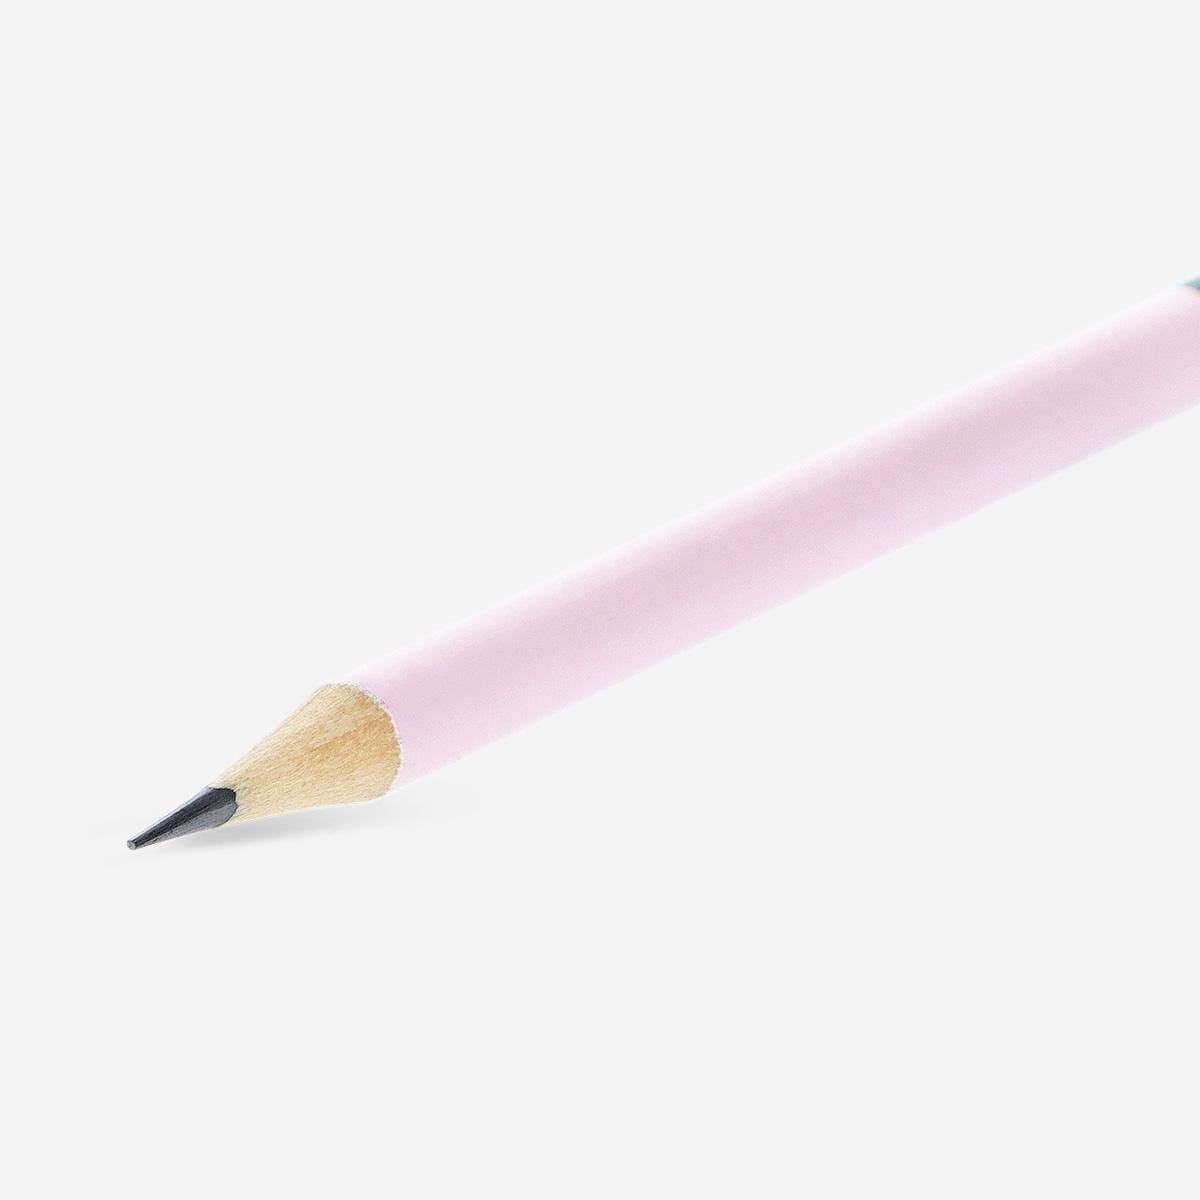 Pencils. 6 pcs